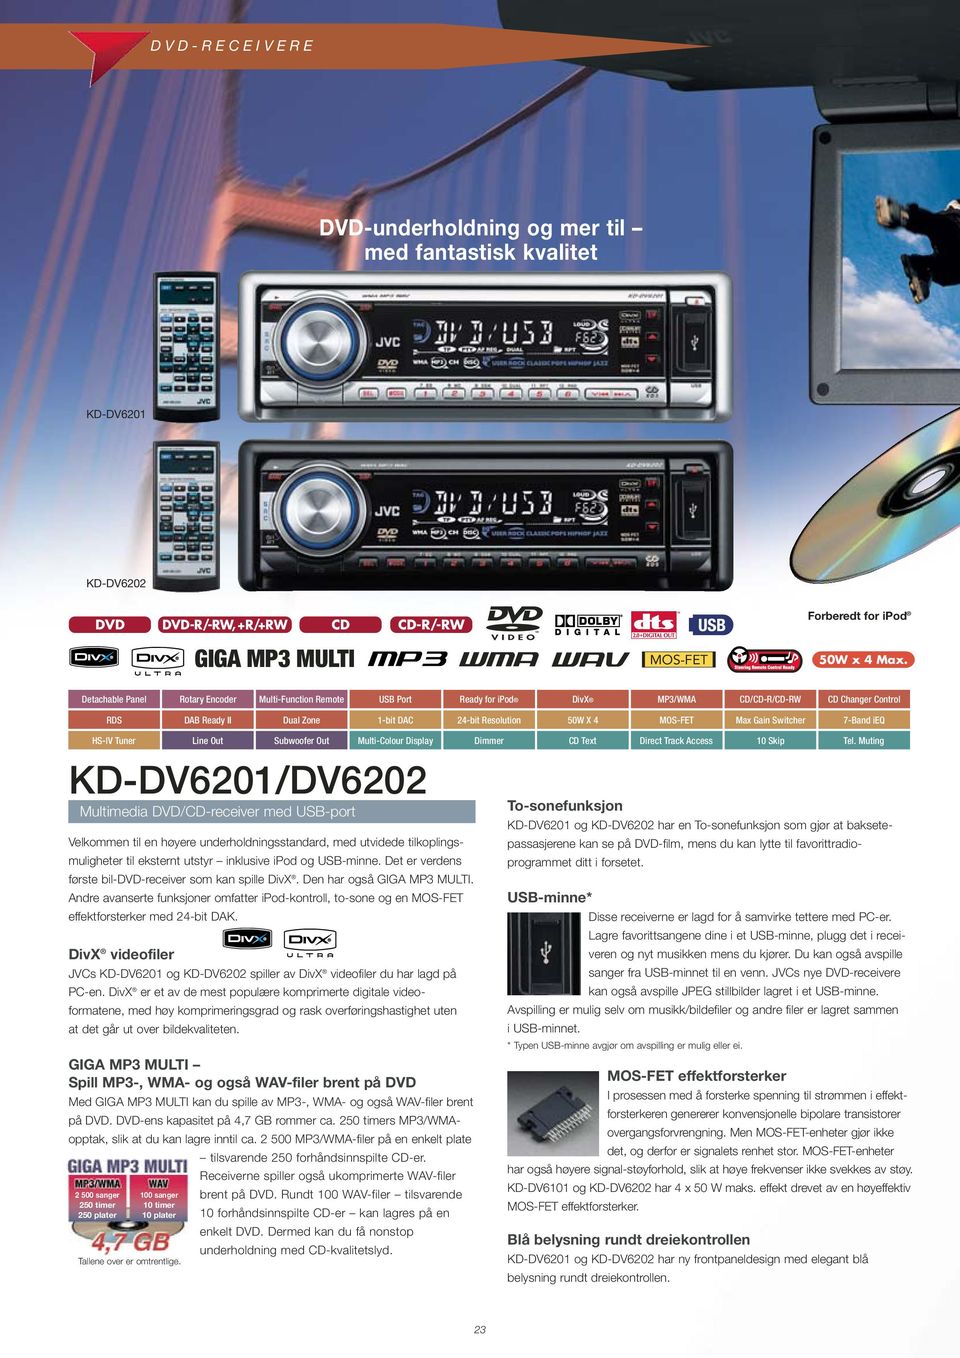 Gain Switcher 7-Band ieq HS-lV Tuner Line Out Subwoofer Out Multi-Colour Display Dimmer CD Text Direct Track Access 10 Skip KD-DV6201/DV6202 Multimedia DVD/CD-receiver med USB-port Velkommen til en